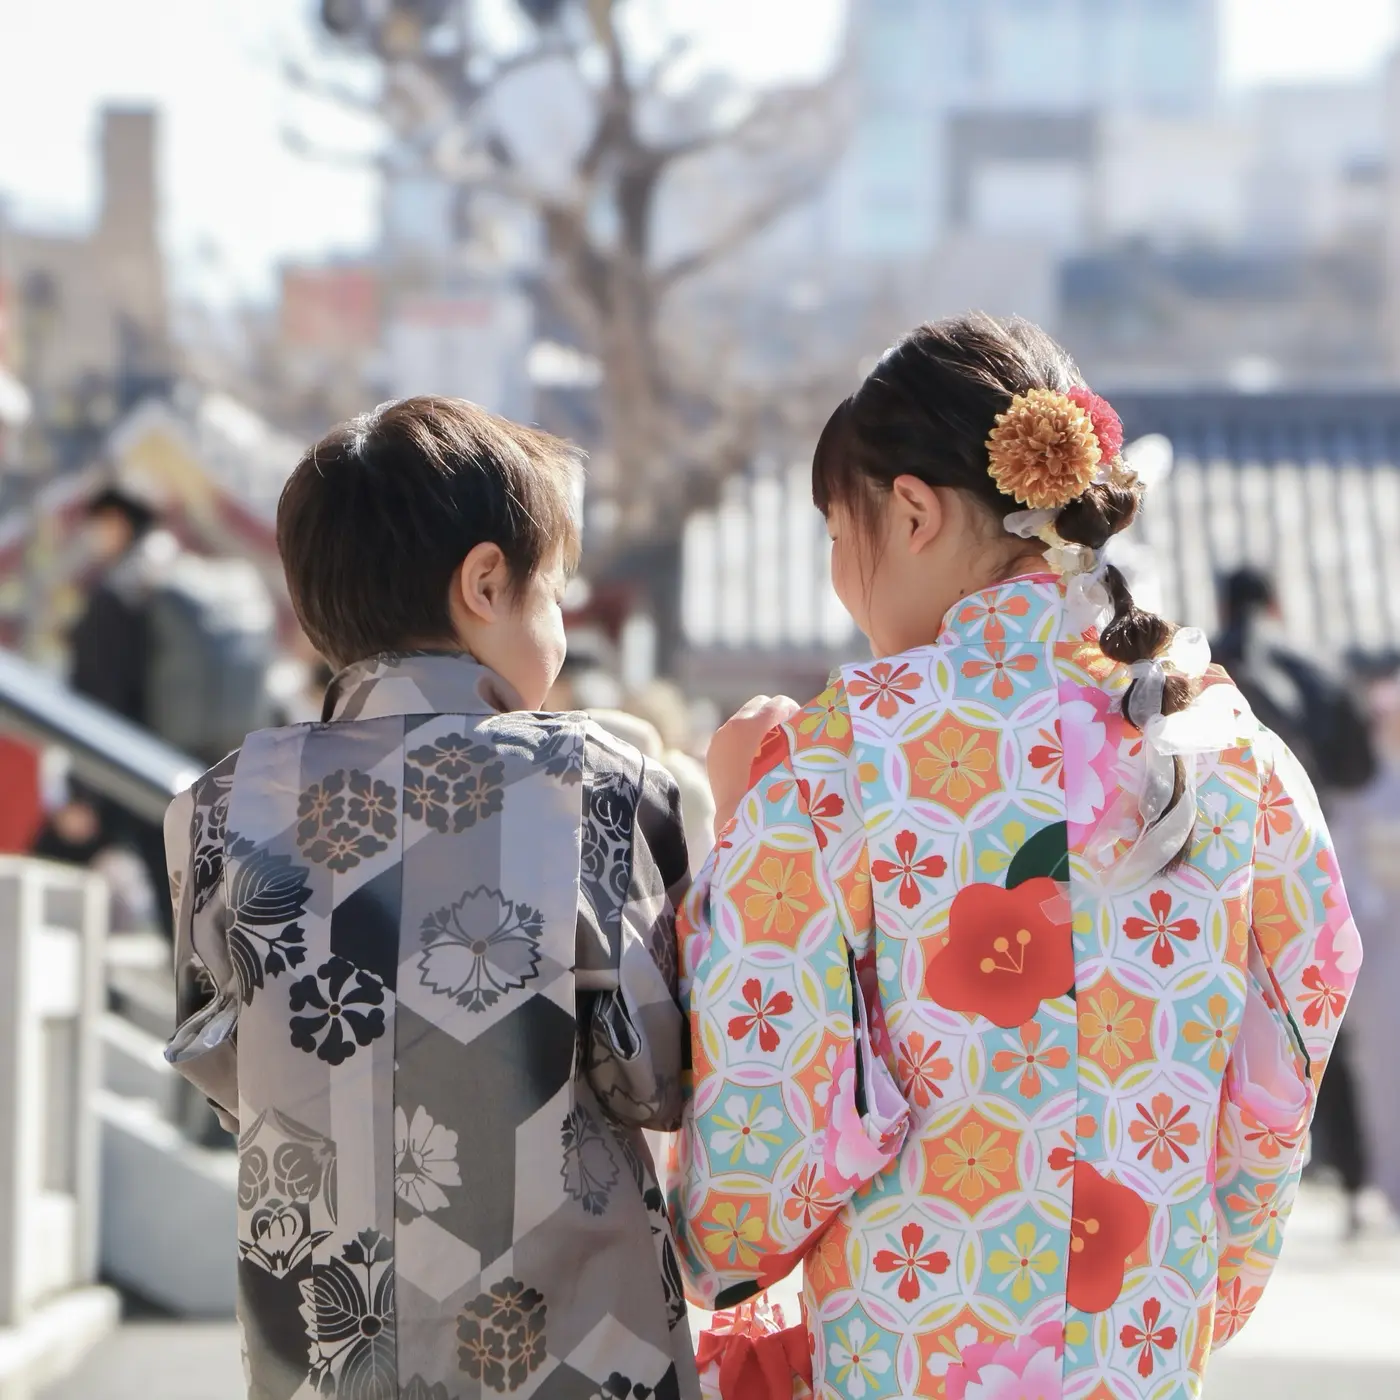 Kimono rental children plan